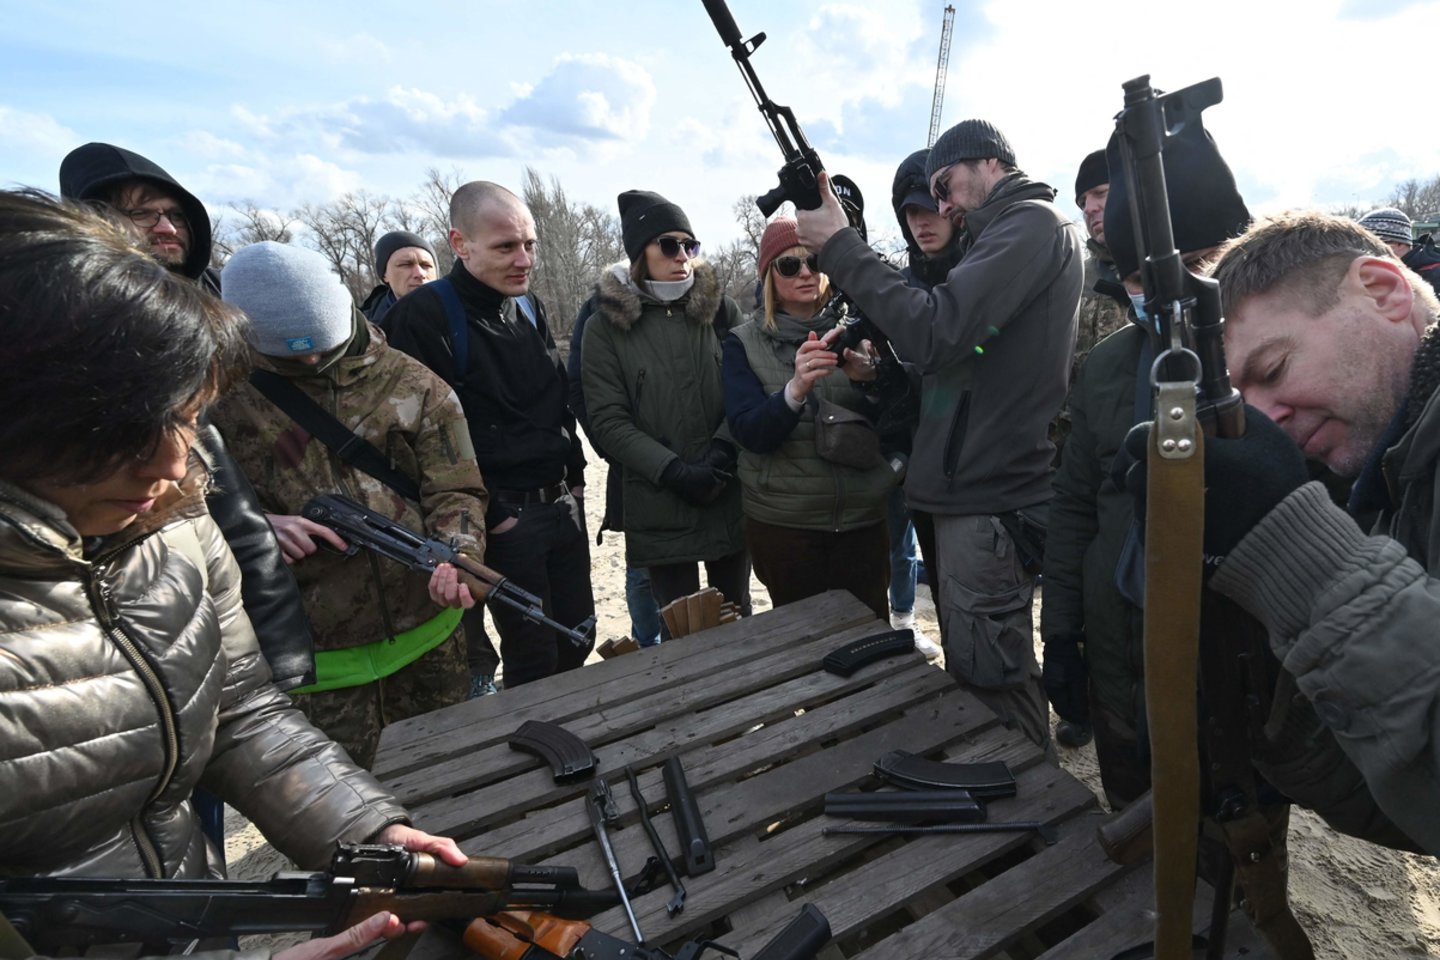  Savaitės pradžioje, dar prieš būsimą Rusijos invaziją ukrainiečiai pirko ginklus, šaudmenis ir net snaiperinius šautuvus, o trečiadienį prie ginklų parduotuvių driekėsi ilgos eilės.<br> AFP / Scanpix nuotr.